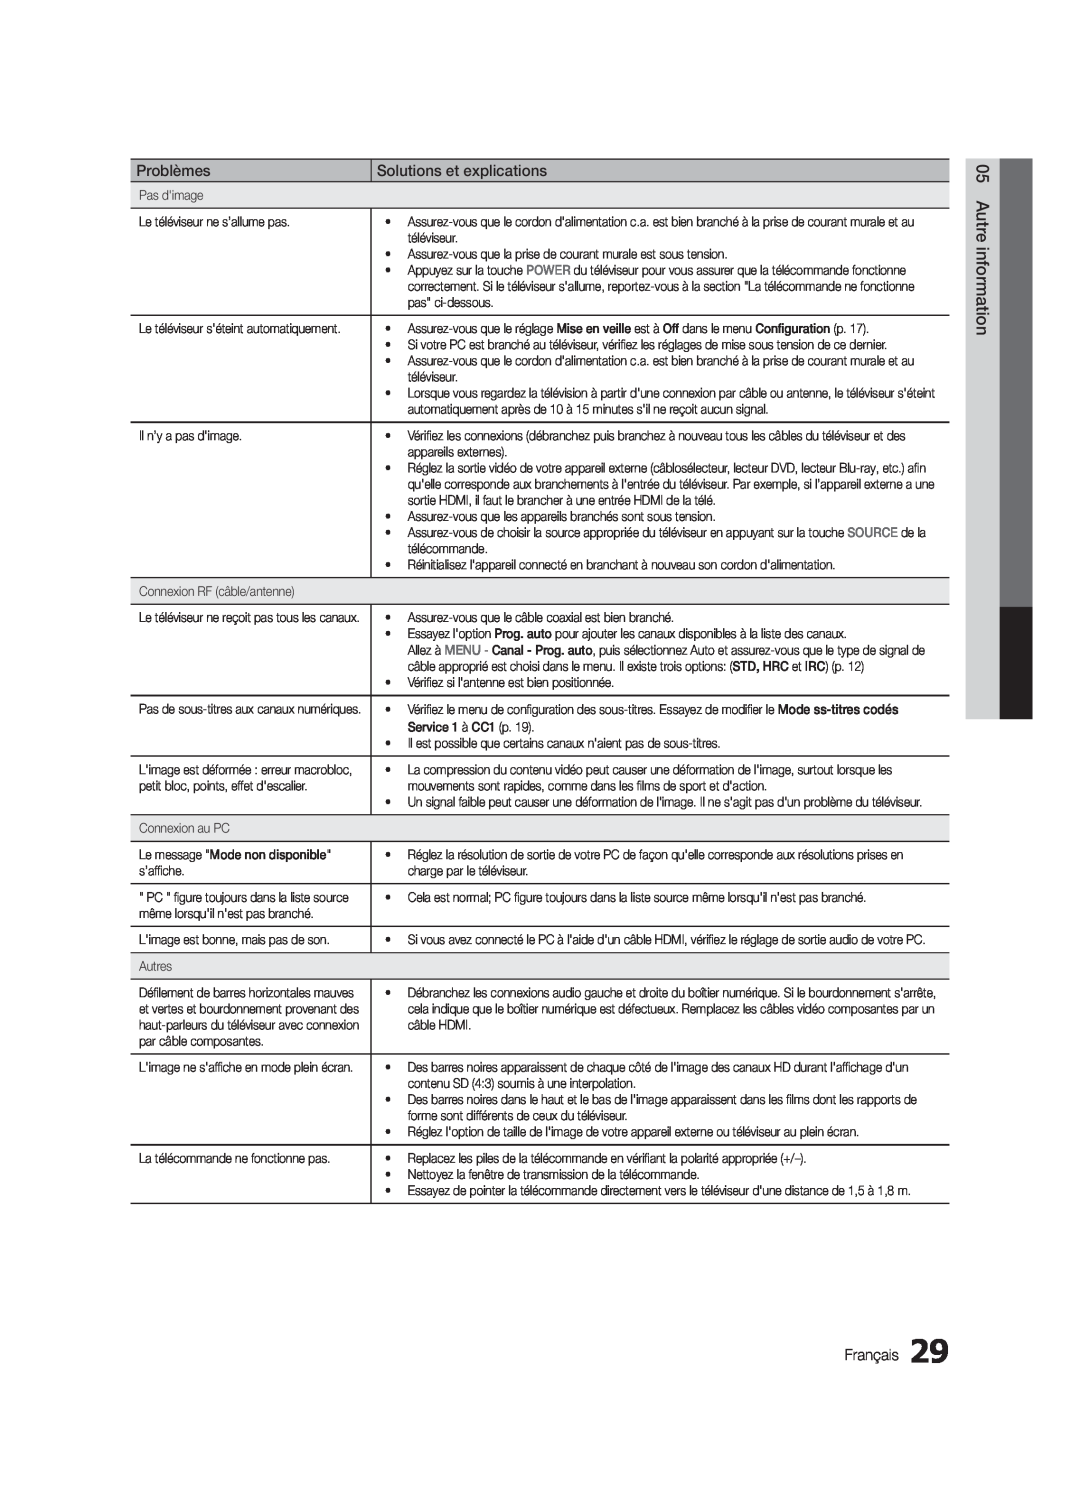 Samsung BN68-02620B-06 user manual Problèmes, Solutions et explications, Autre information, Français 